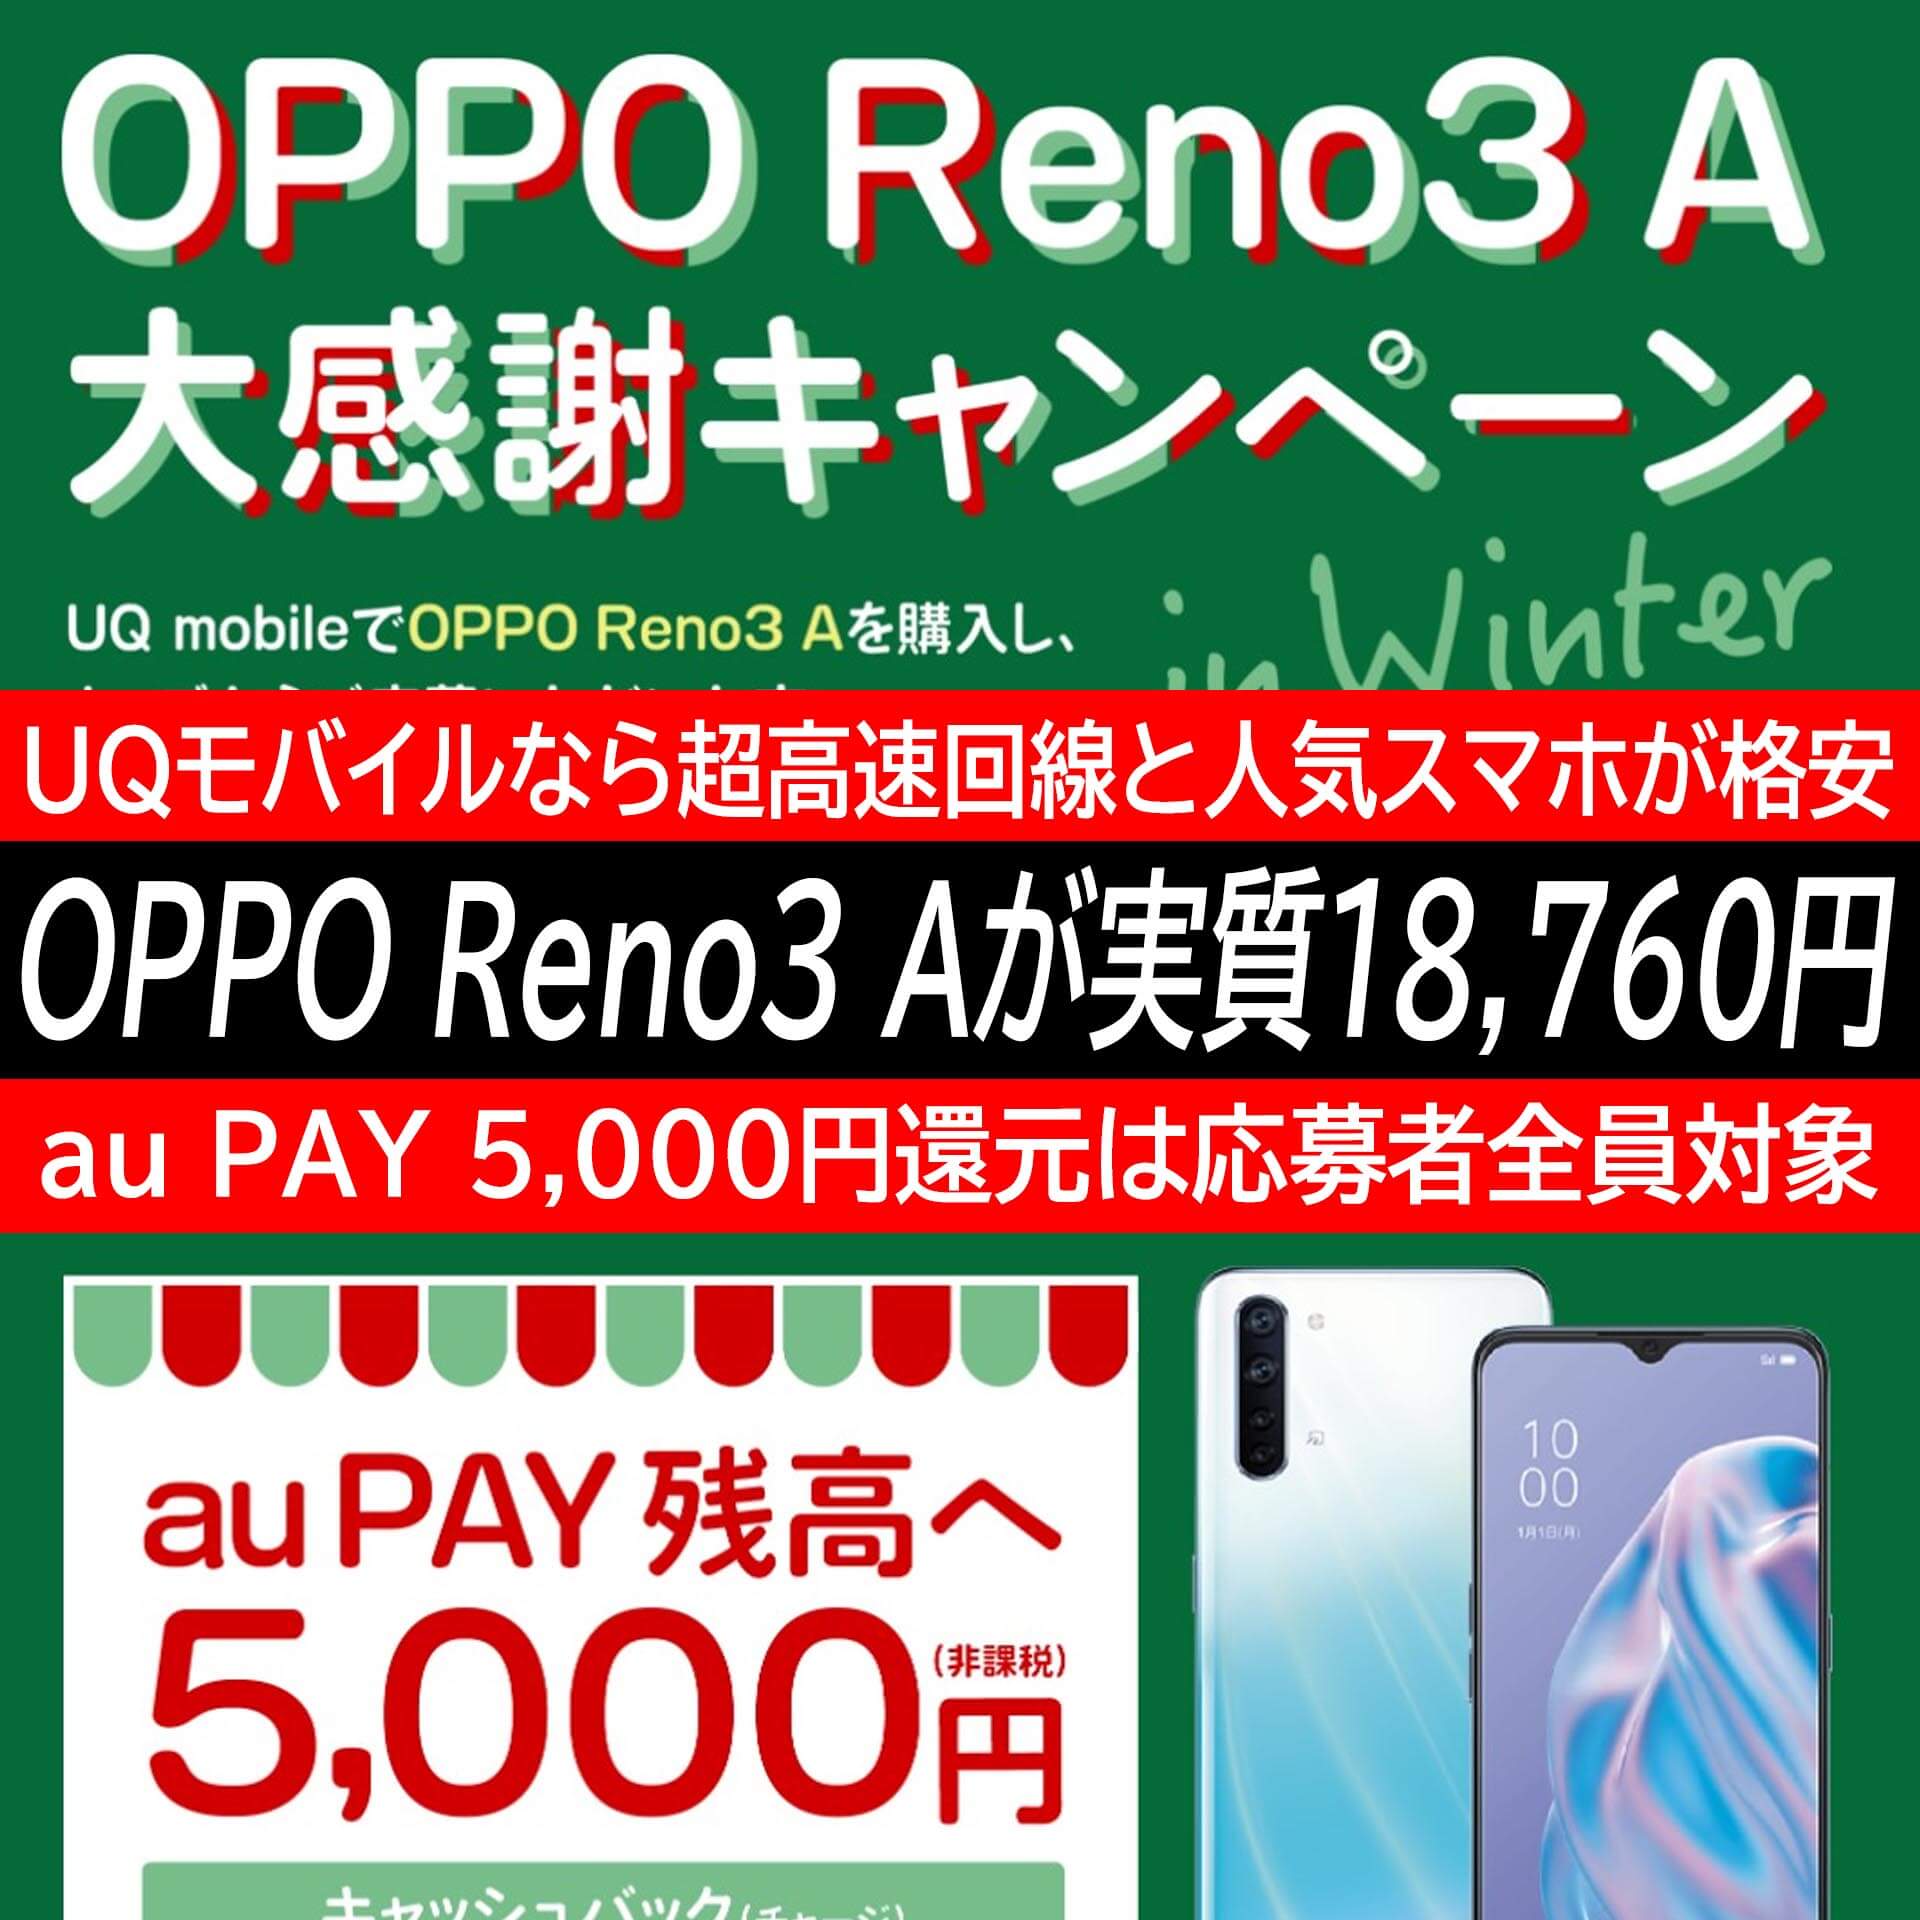 Uqモバイルでoppo Reno3 Aを実質18 760円で購入する方法 12月31日までの期間限定キャンペーン開催中